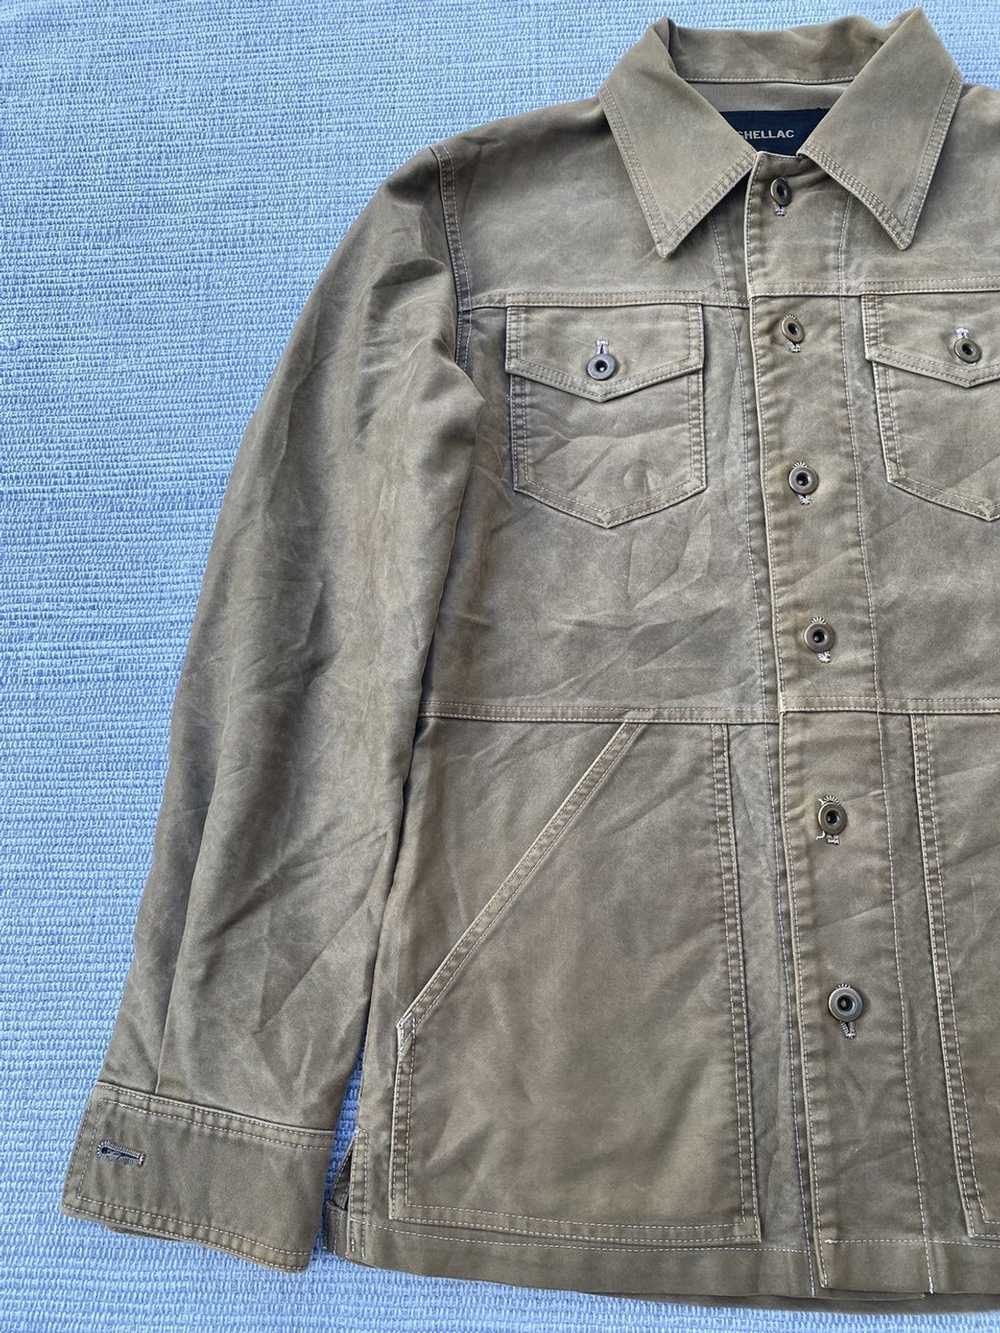 Japanese Brand shellac jacket - image 5